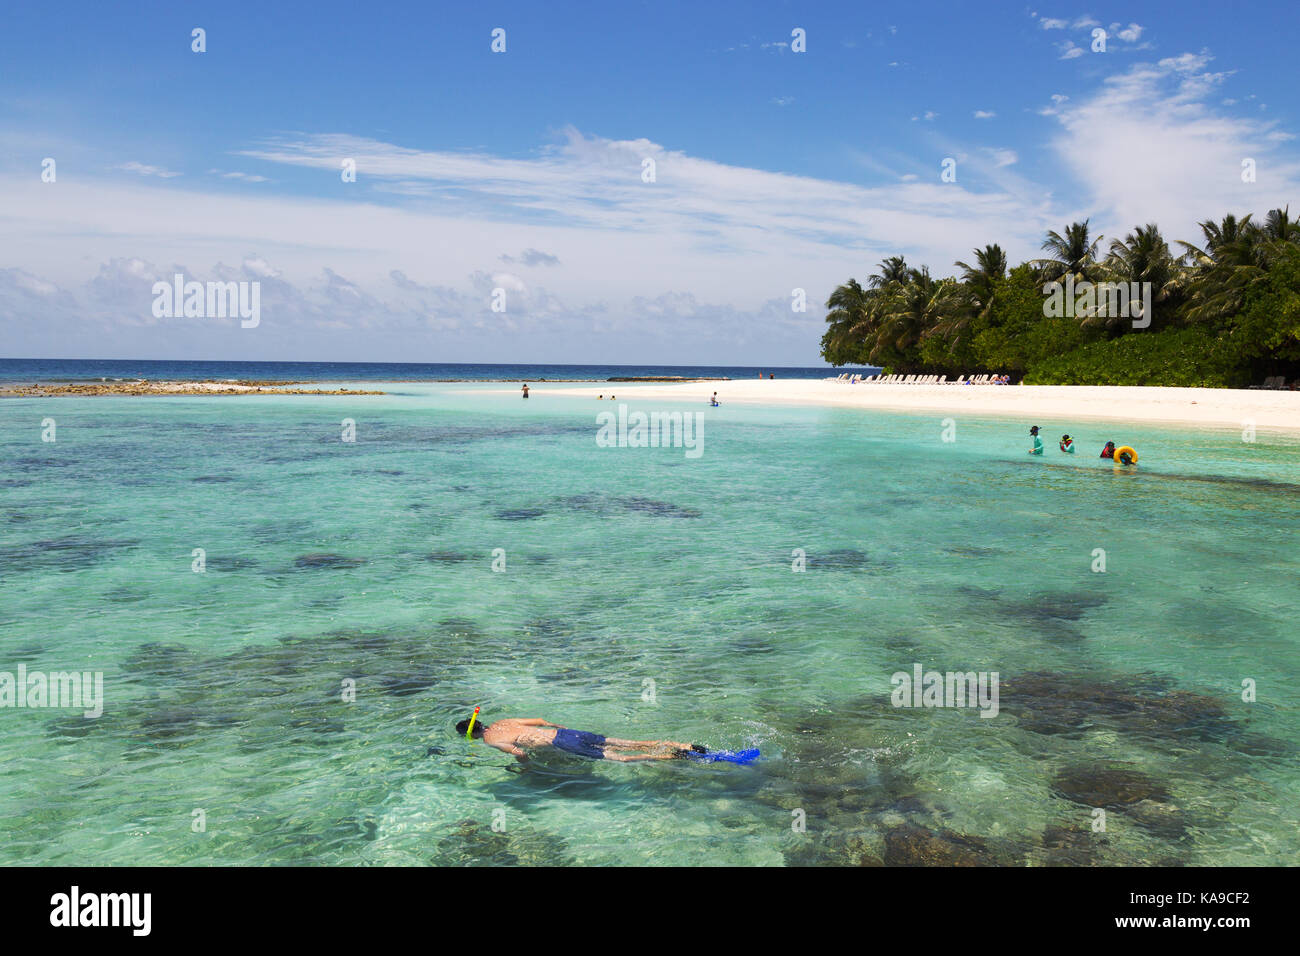 Maldives snorkeling - tourists on a Maldives holiday snorkeling off Kuramathi resort, the Maldives, Asia Stock Photo